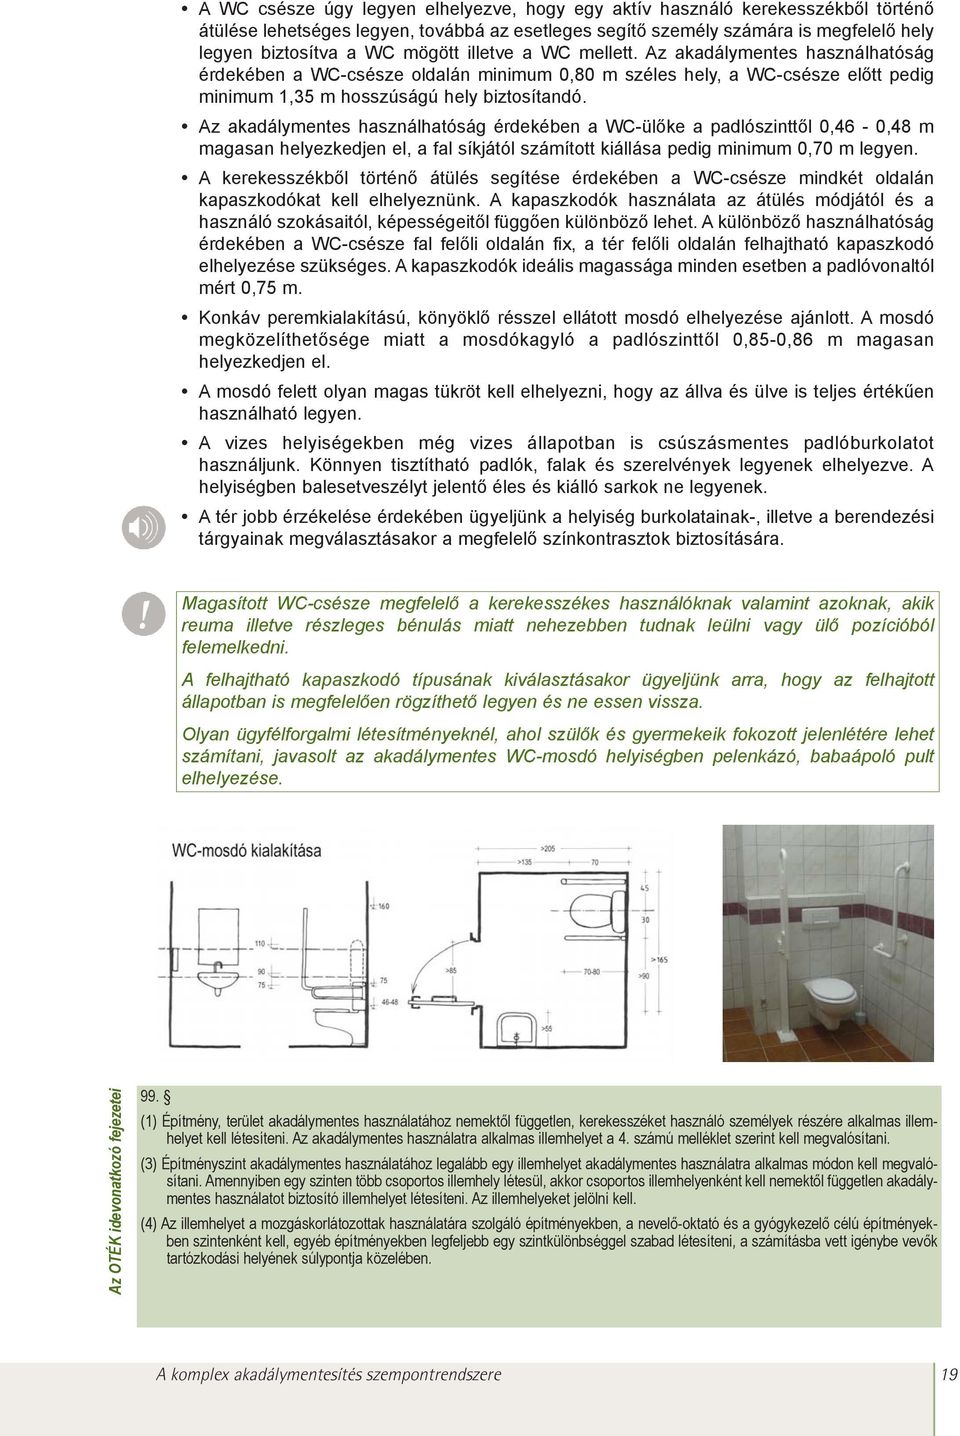 Az akadálymentes használhatóság érdekében a WC-ülõke a padlószinttõl 0,46-0,48 m magasan helyezkedjen el, a fal síkjától számított kiállása pedig minimum 0,70 m legyen.